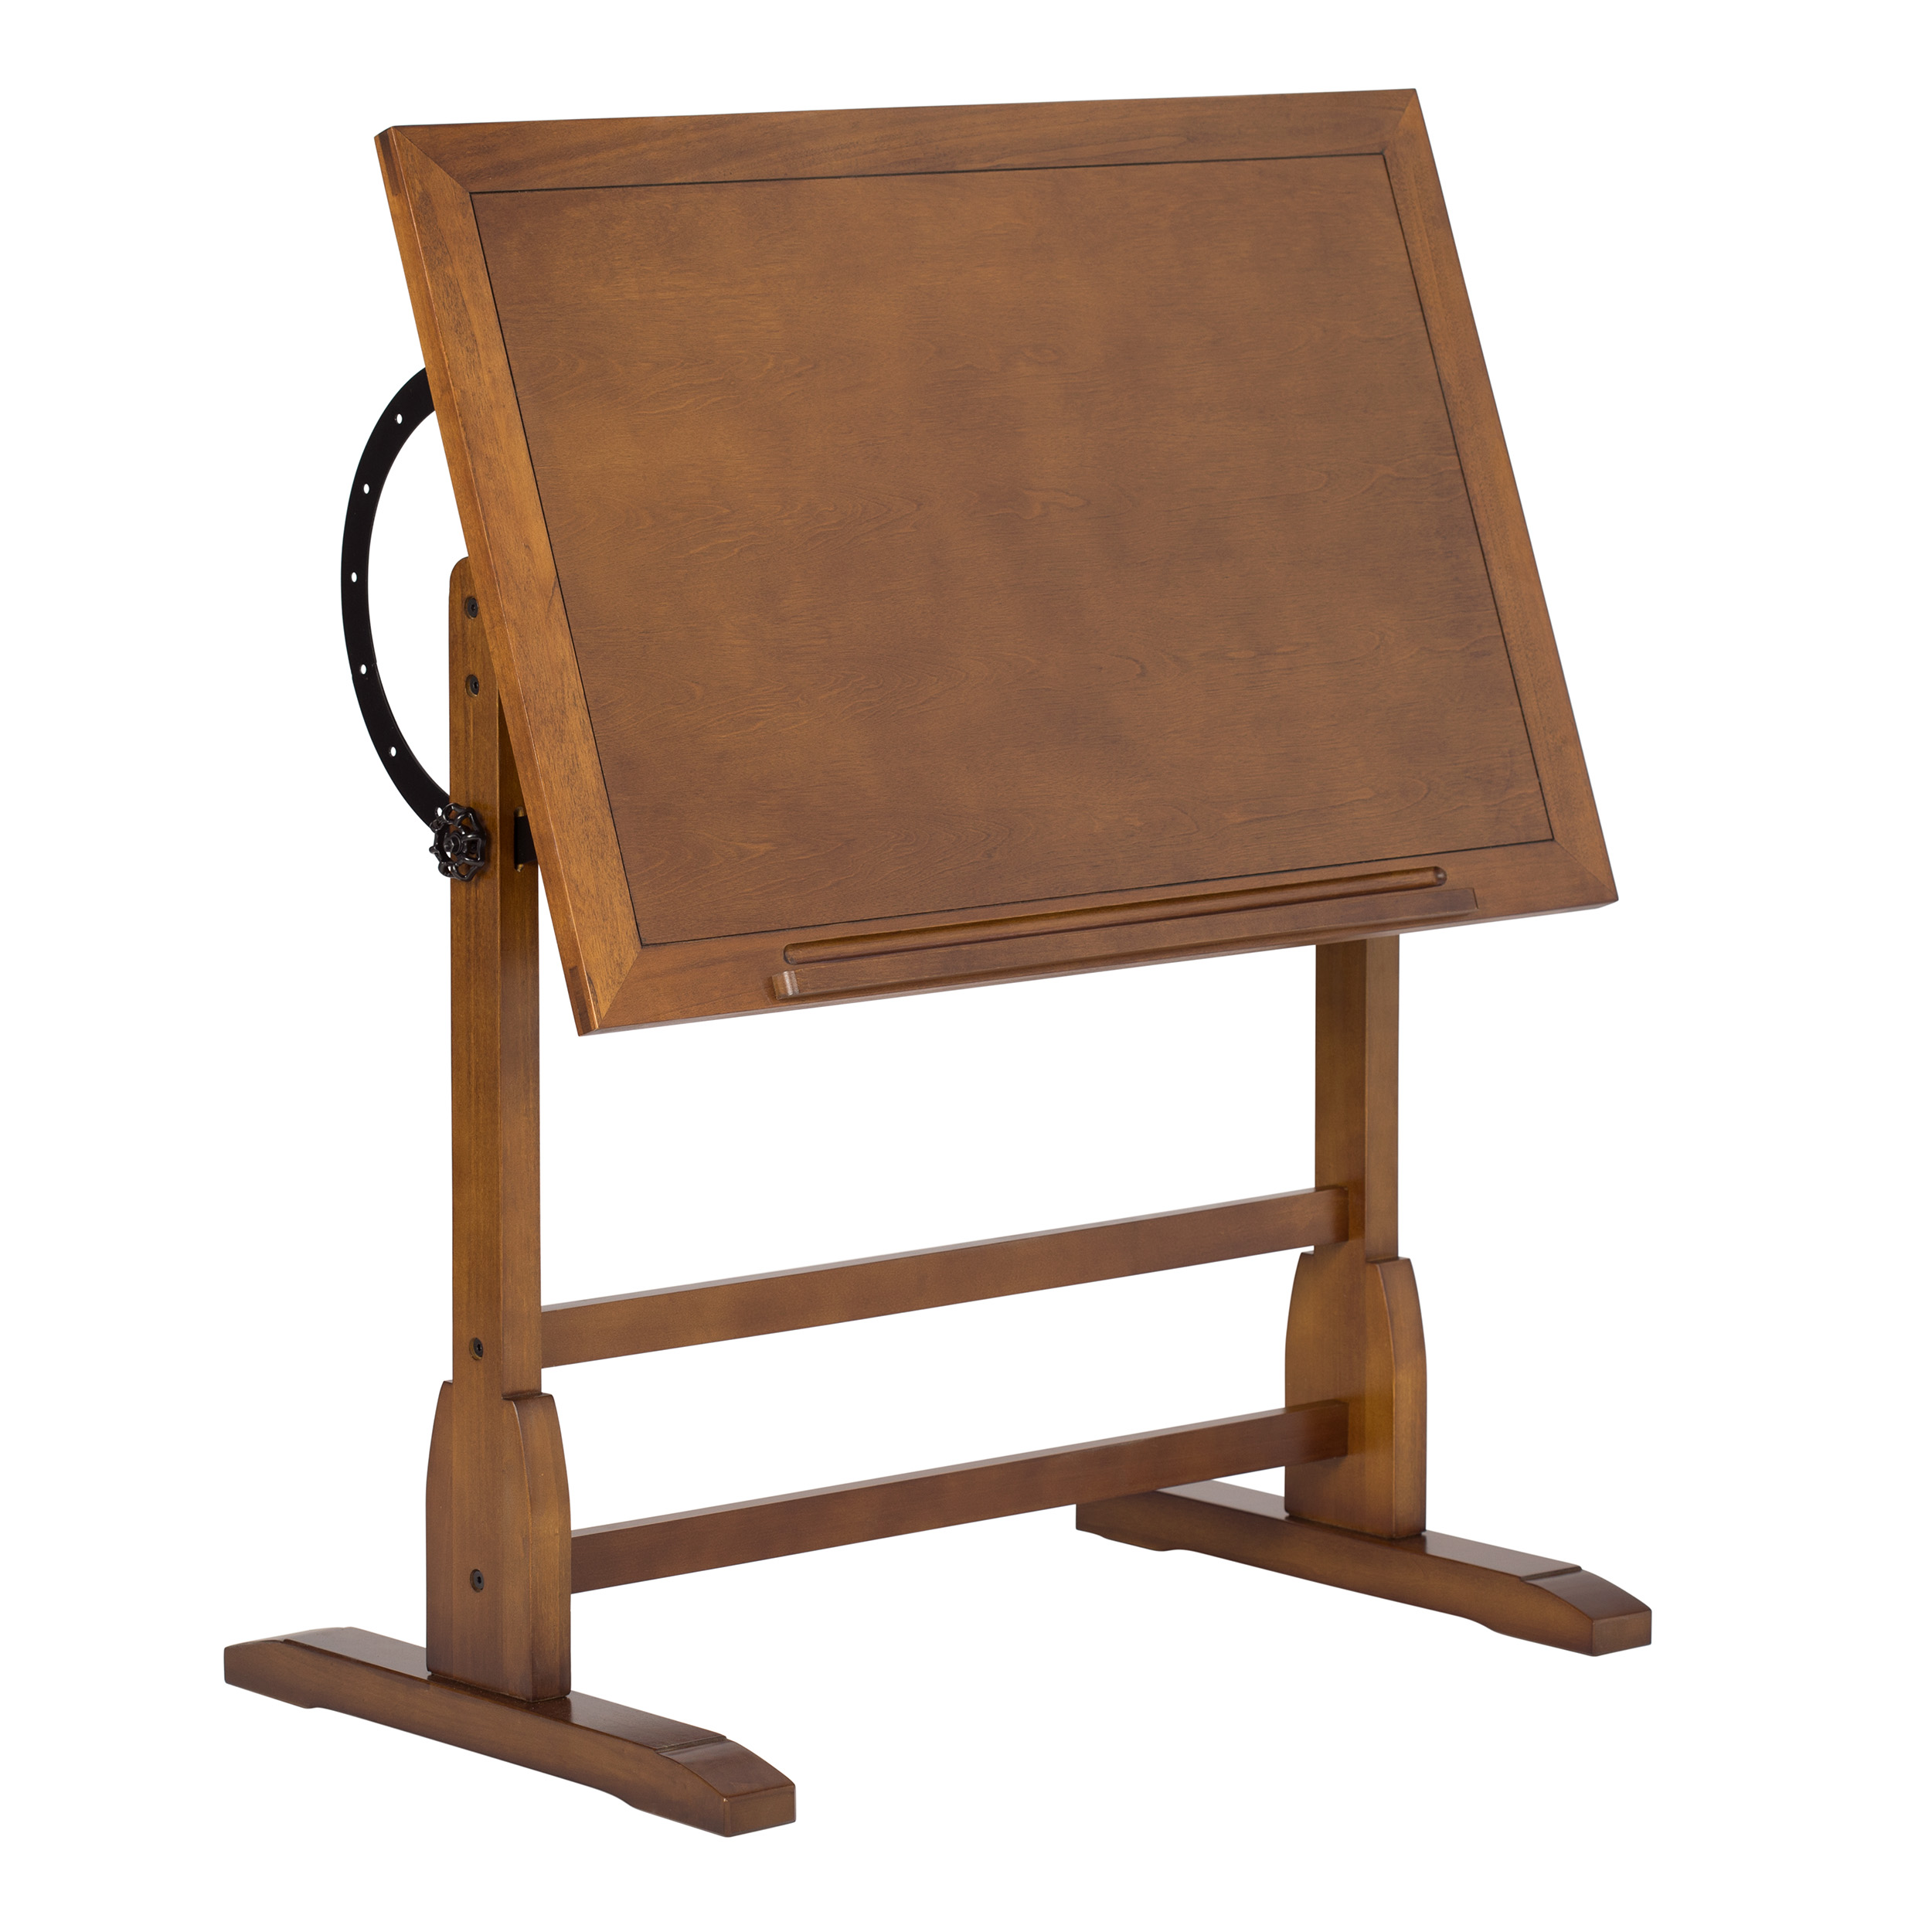 Studio Designs Vintage Drafting Table Rustic Oak Punkie